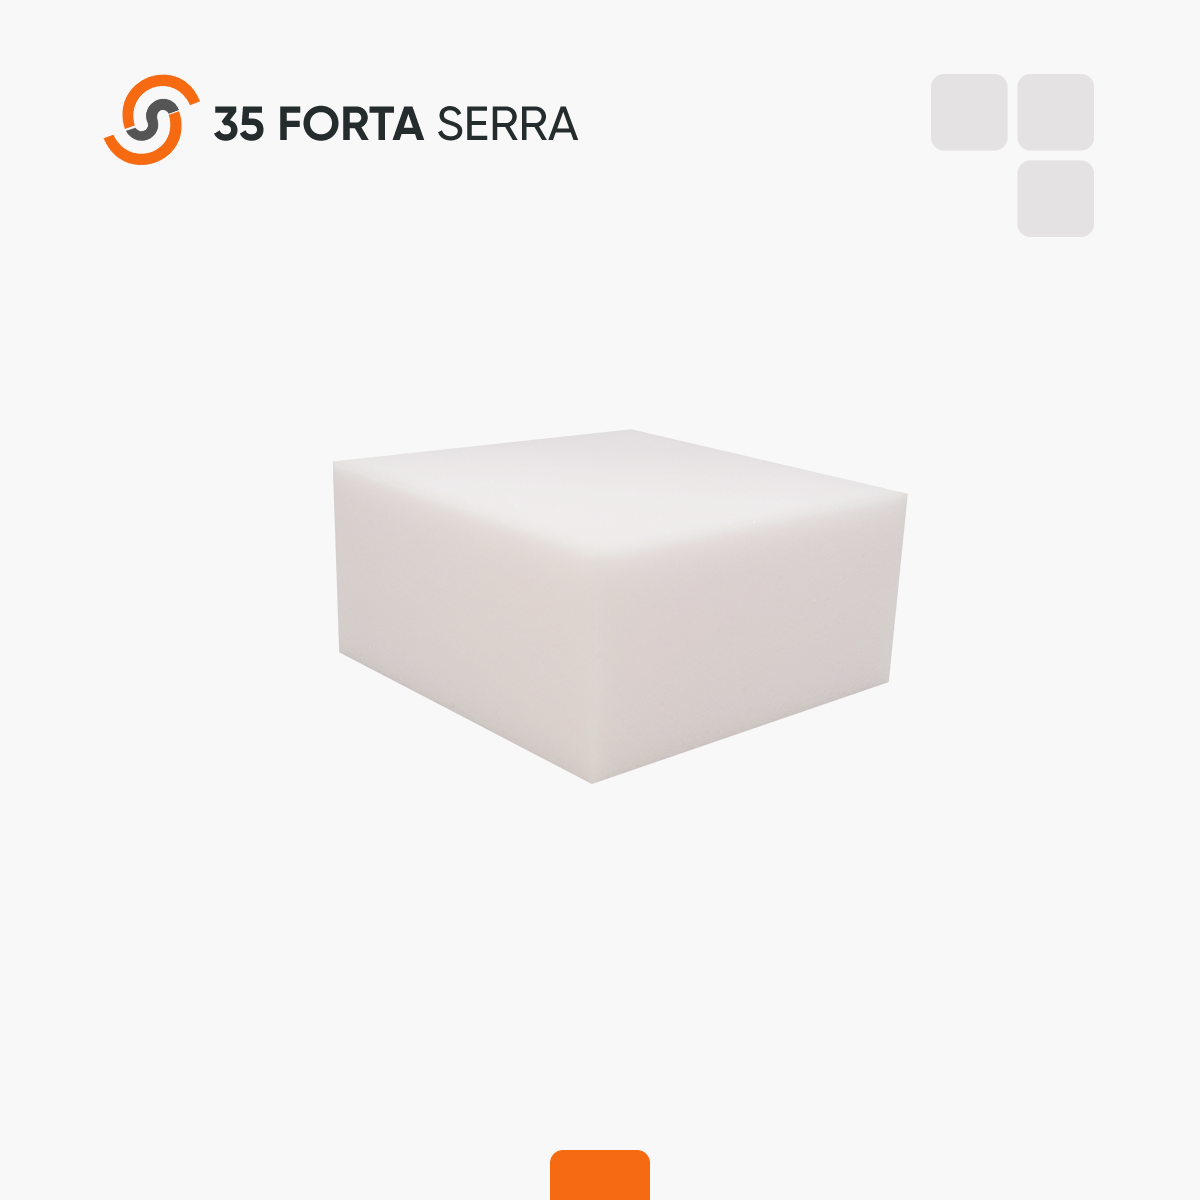 35 Forta Serra